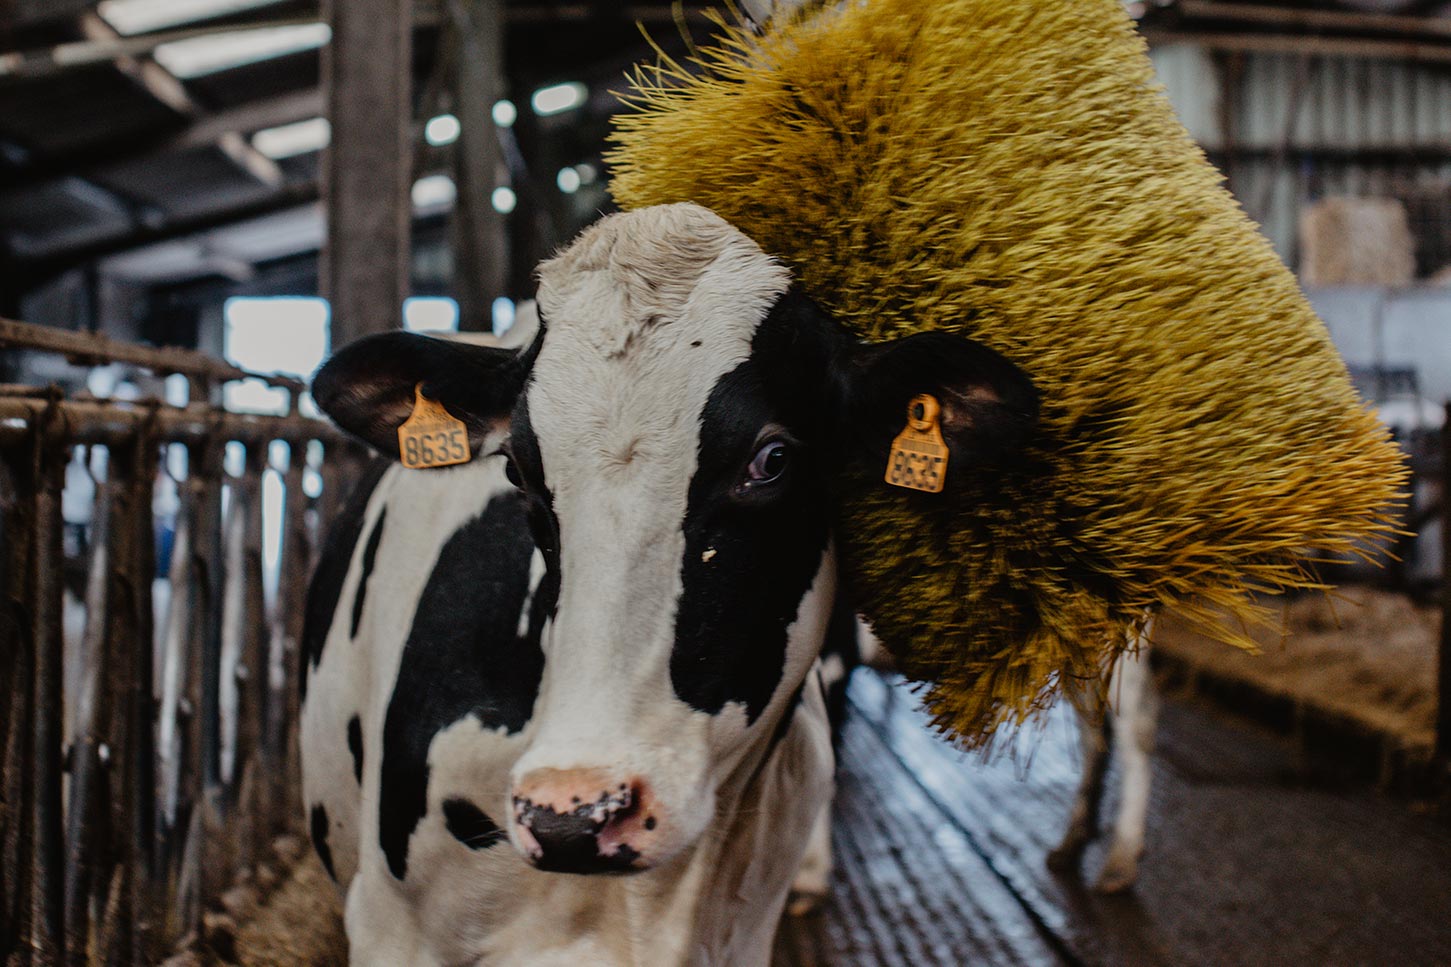  Vaches massées par des brosses massantes pour leur bien-être Paysan Breton